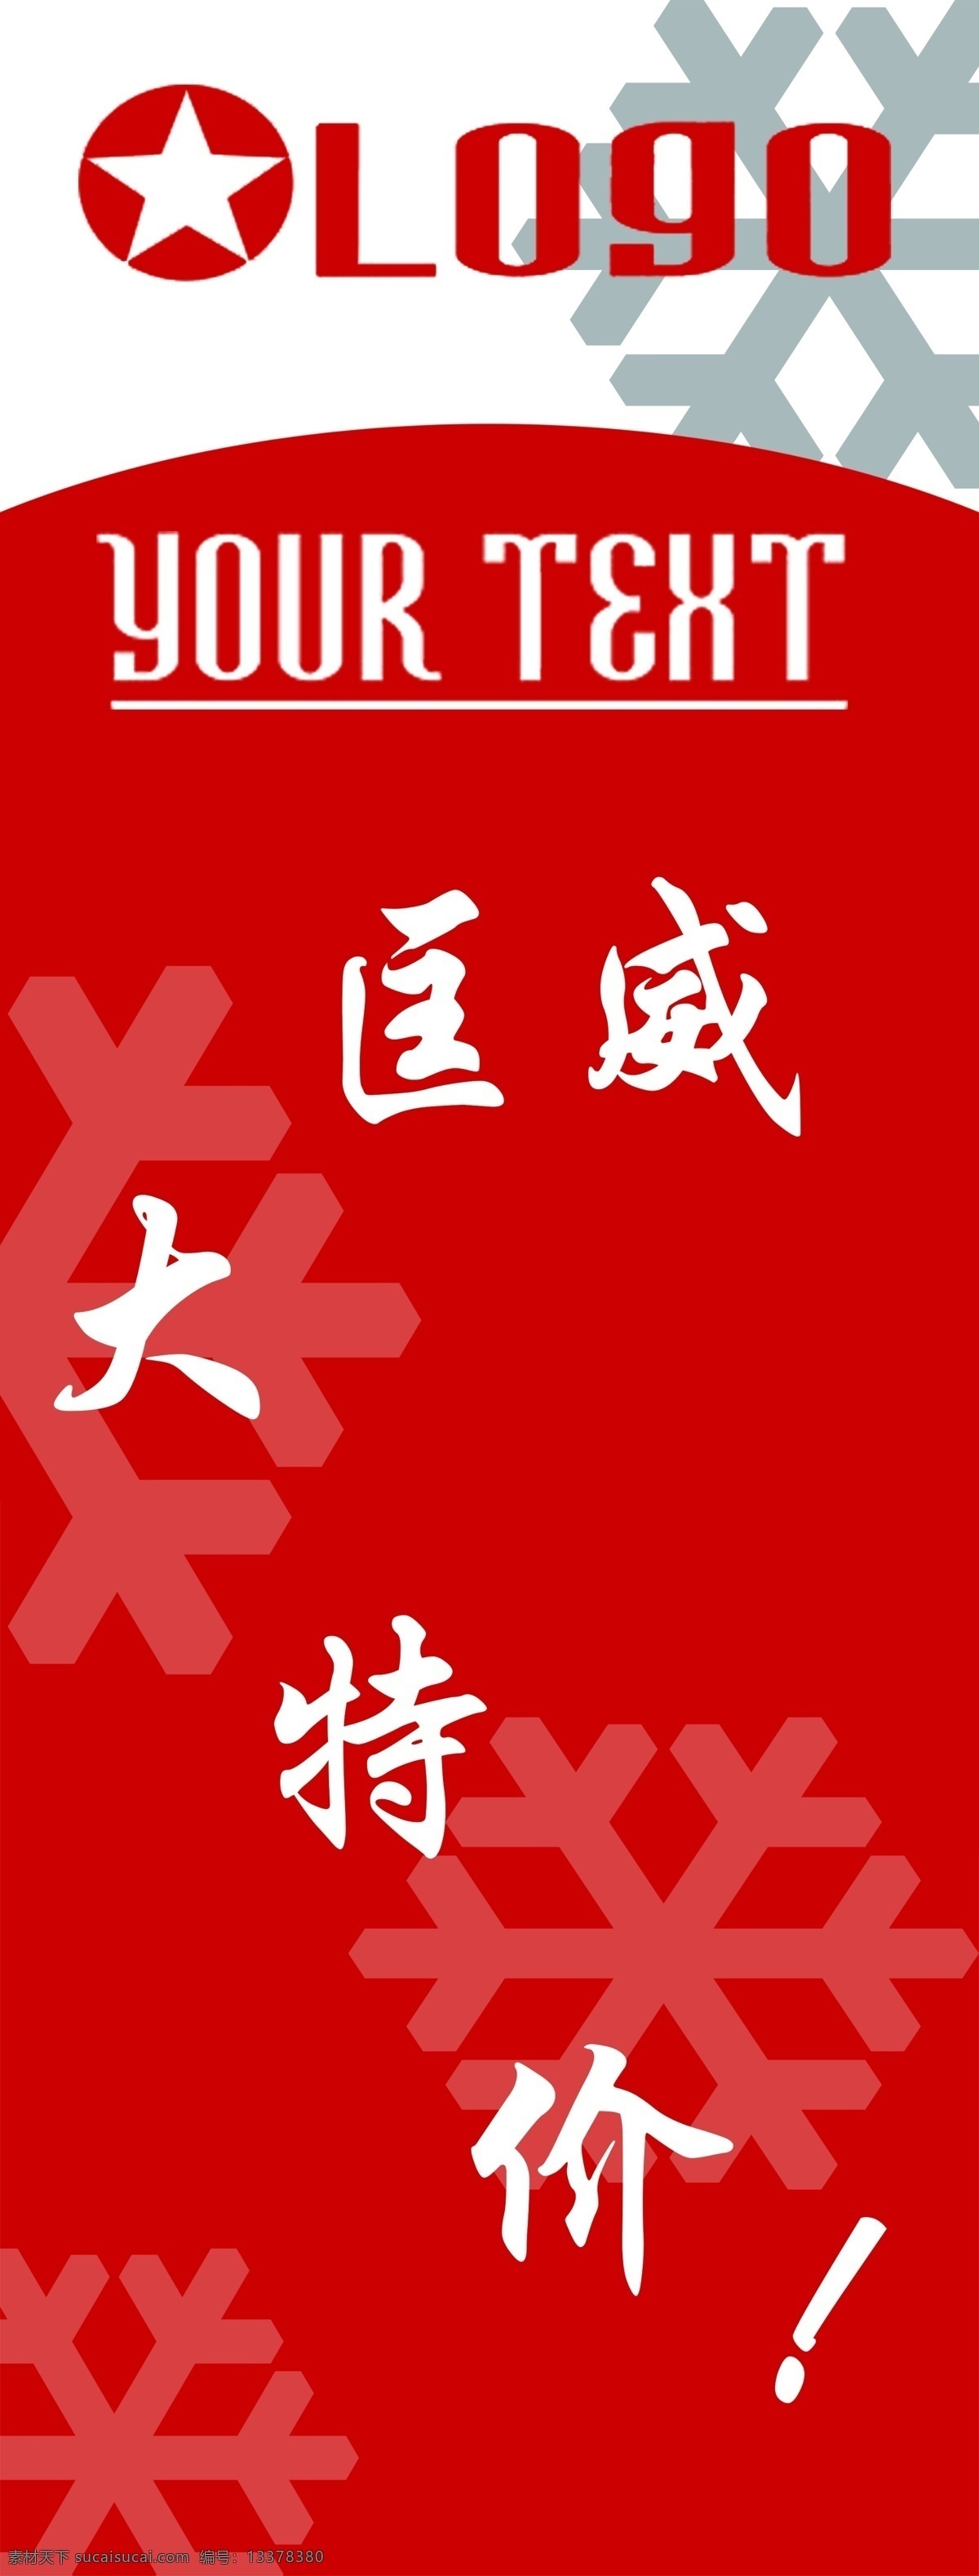 匡威 logo 特价 红色背景 雪花 分层 源文件